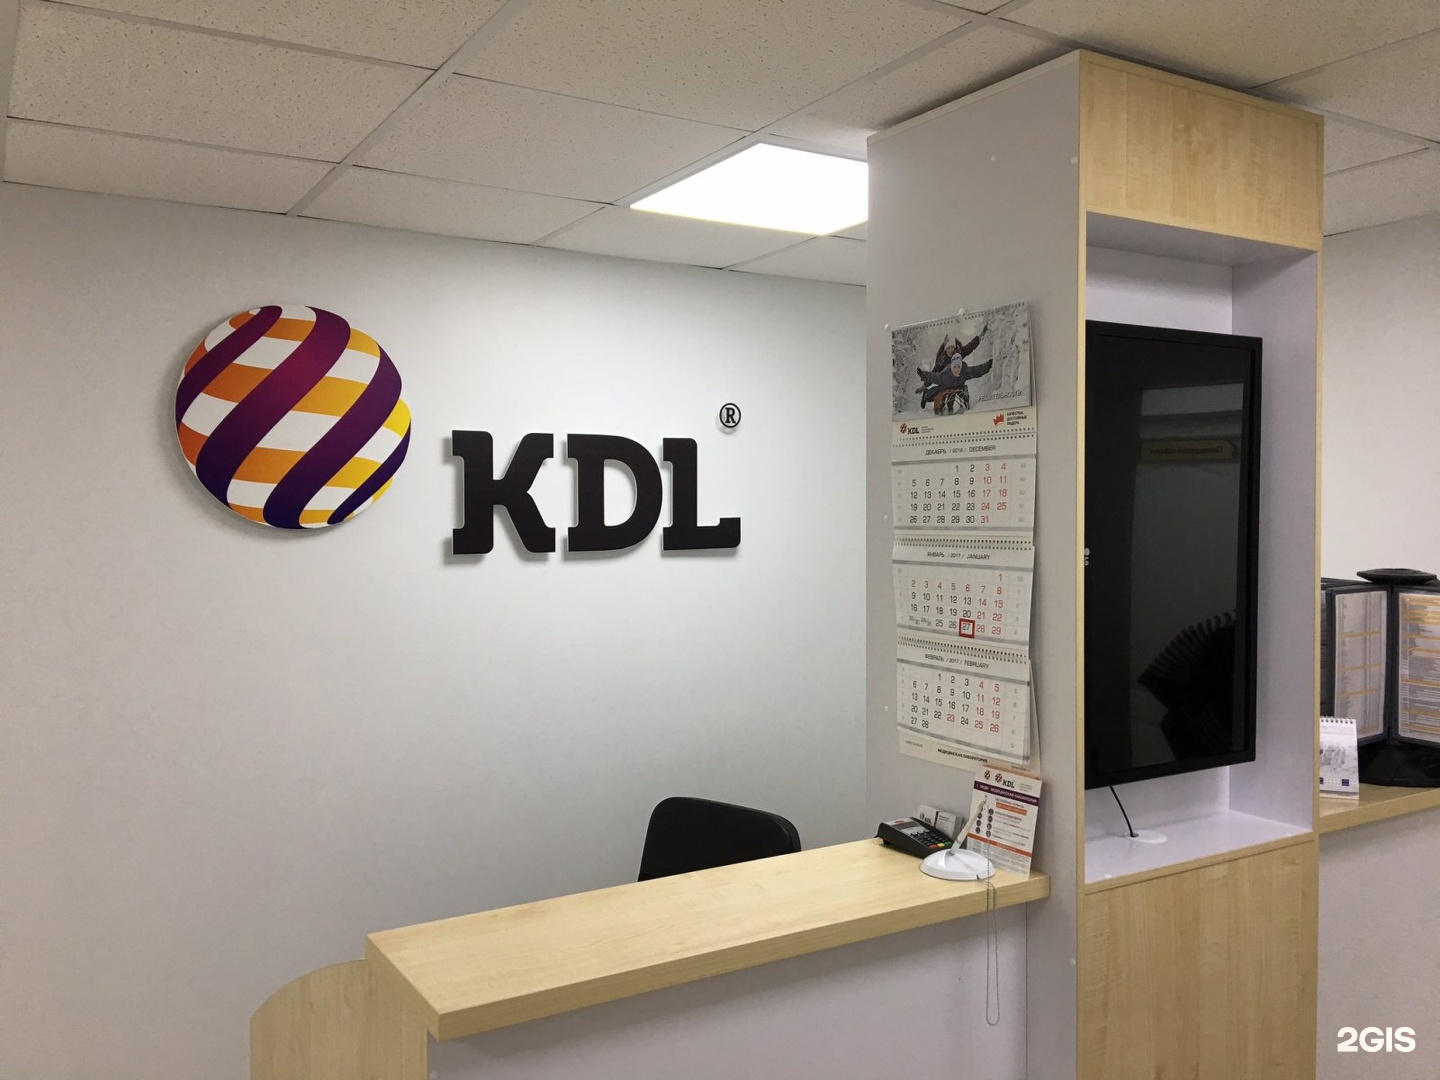 Кдл выезд. КДЛ лаборатория Омск. KDL логотип. Эмблема КДЛ лаборатории. KDL В Омске.